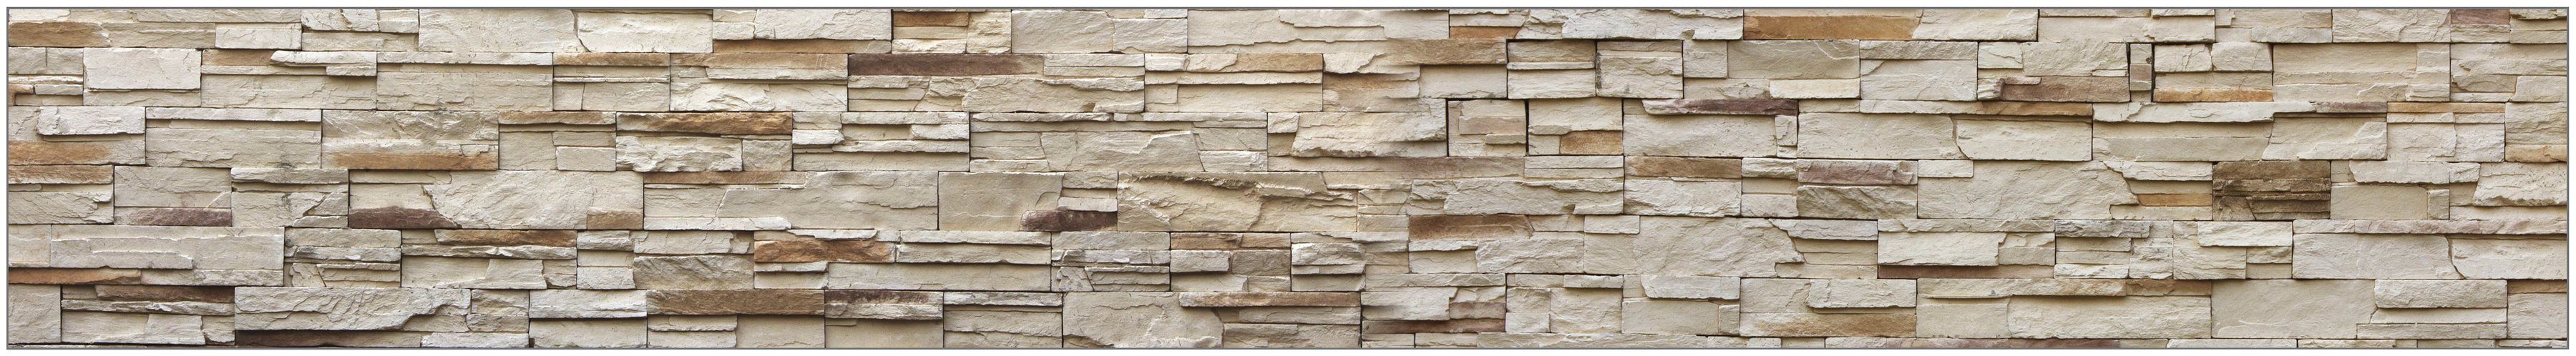 MySpotti Küchenrückwand fixy Rustical Bricks, selbstklebende und flexible Küchenrückwand-Folie natur